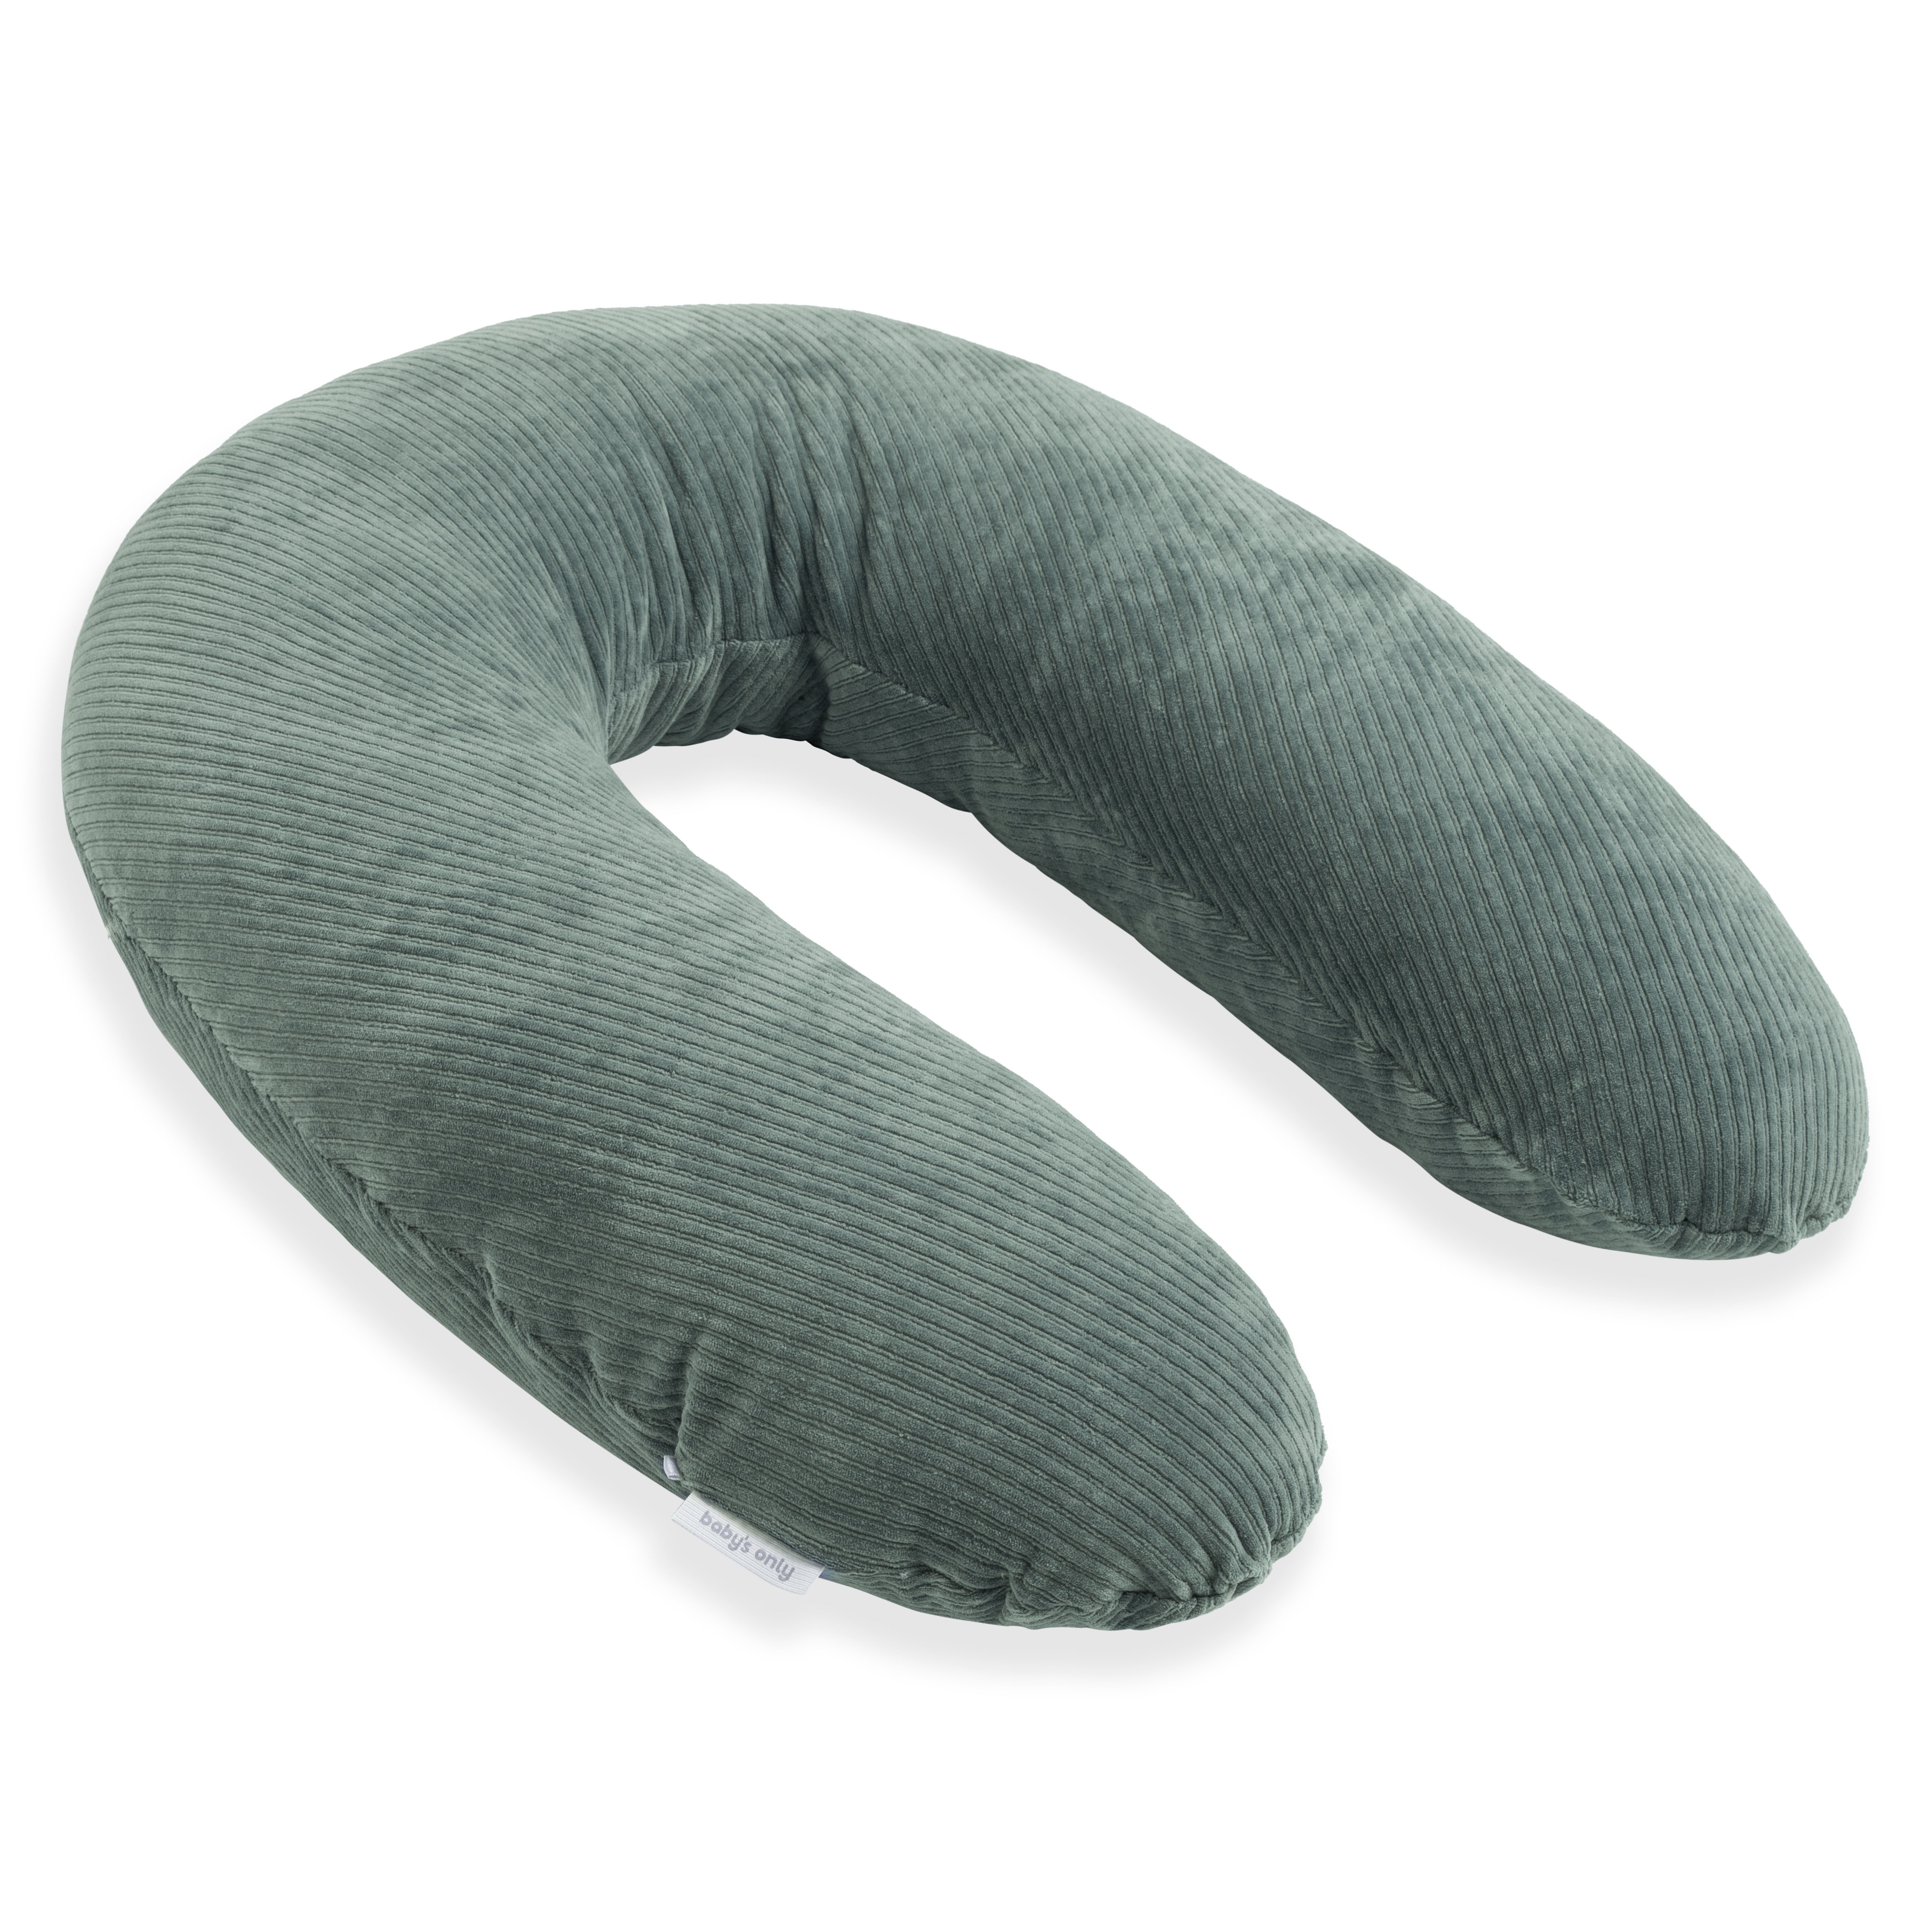 Nursing pillow cover Sense sea green